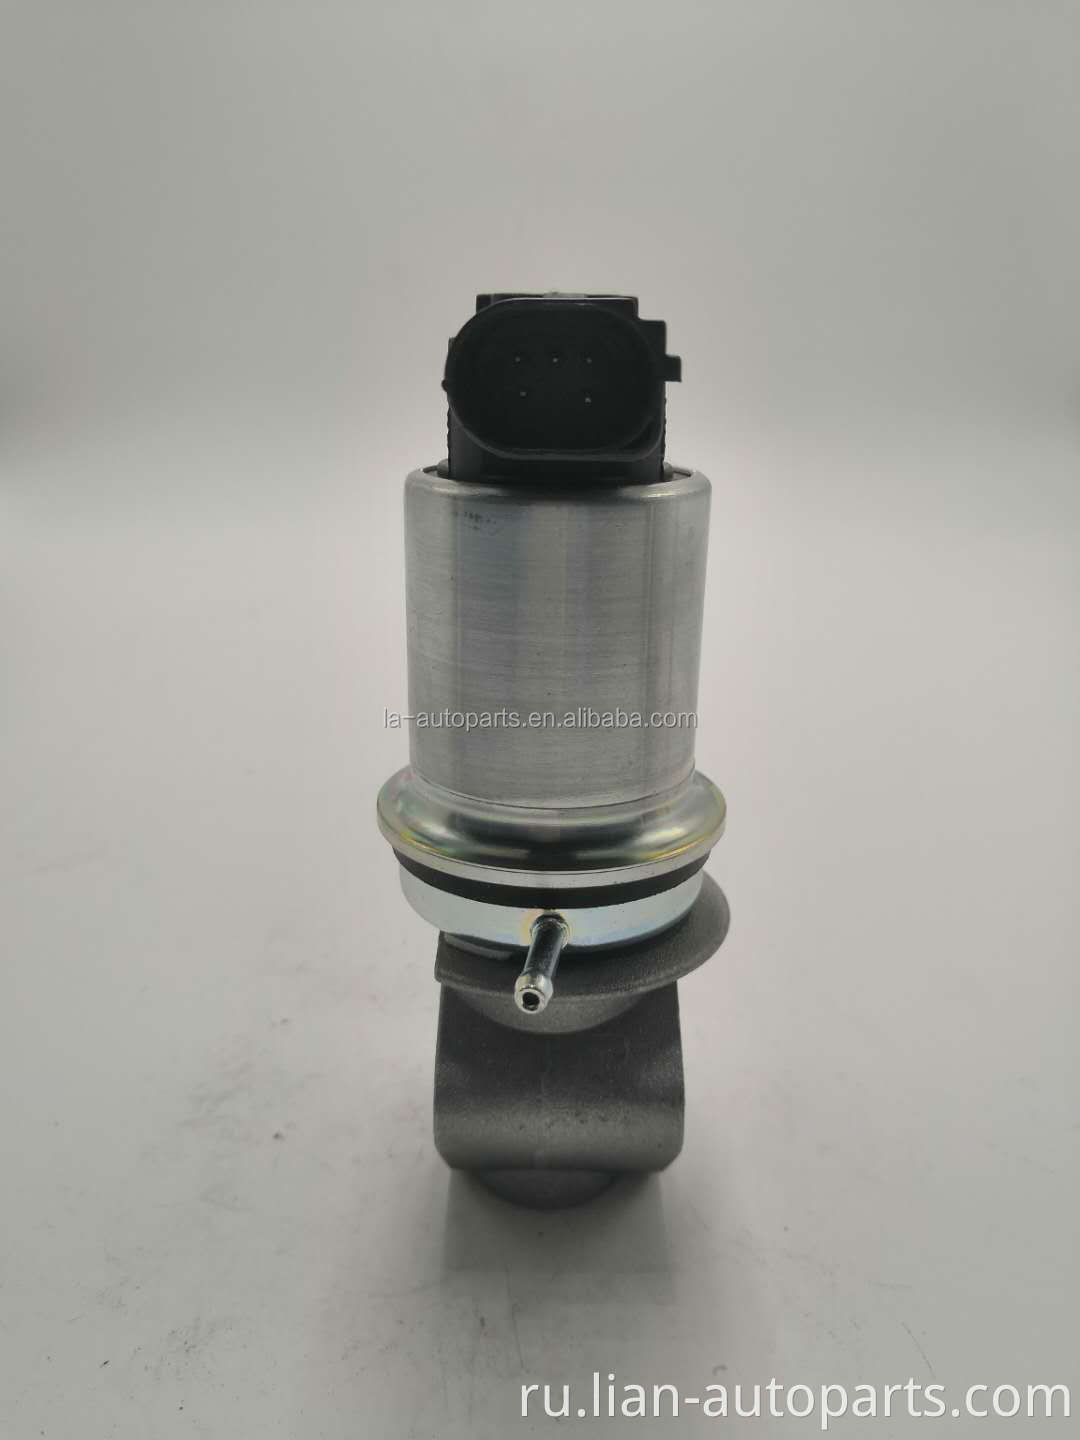 Фабричный оптовый клапан EGR для Skoda Volkswagen Audi Seat 7.22785.17.0 036131503M